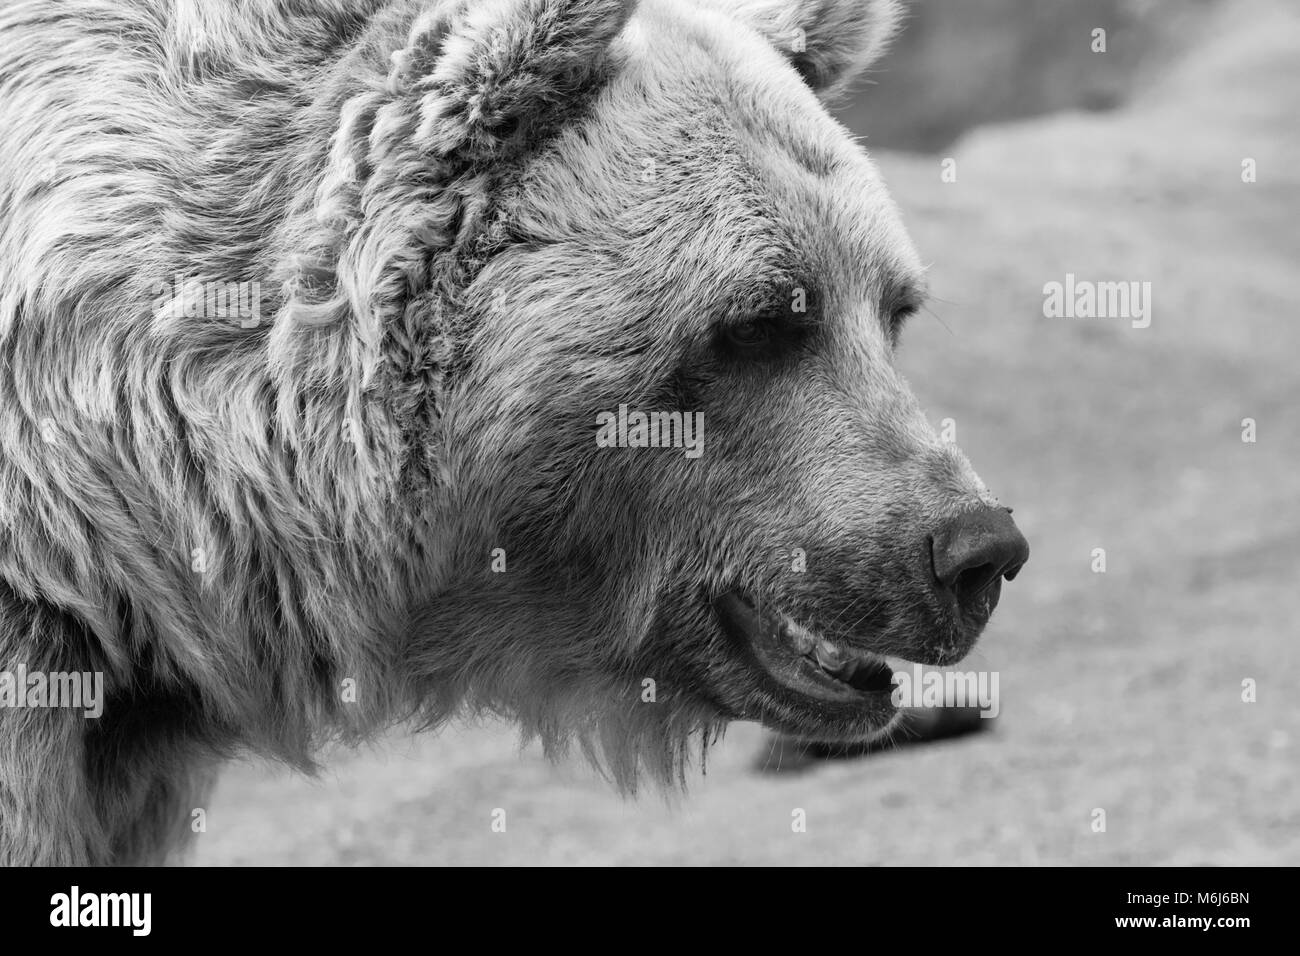 Eine detaillierte Nahaufnahme eines Bären Gesicht in Schwarz und Weiß Stockfoto